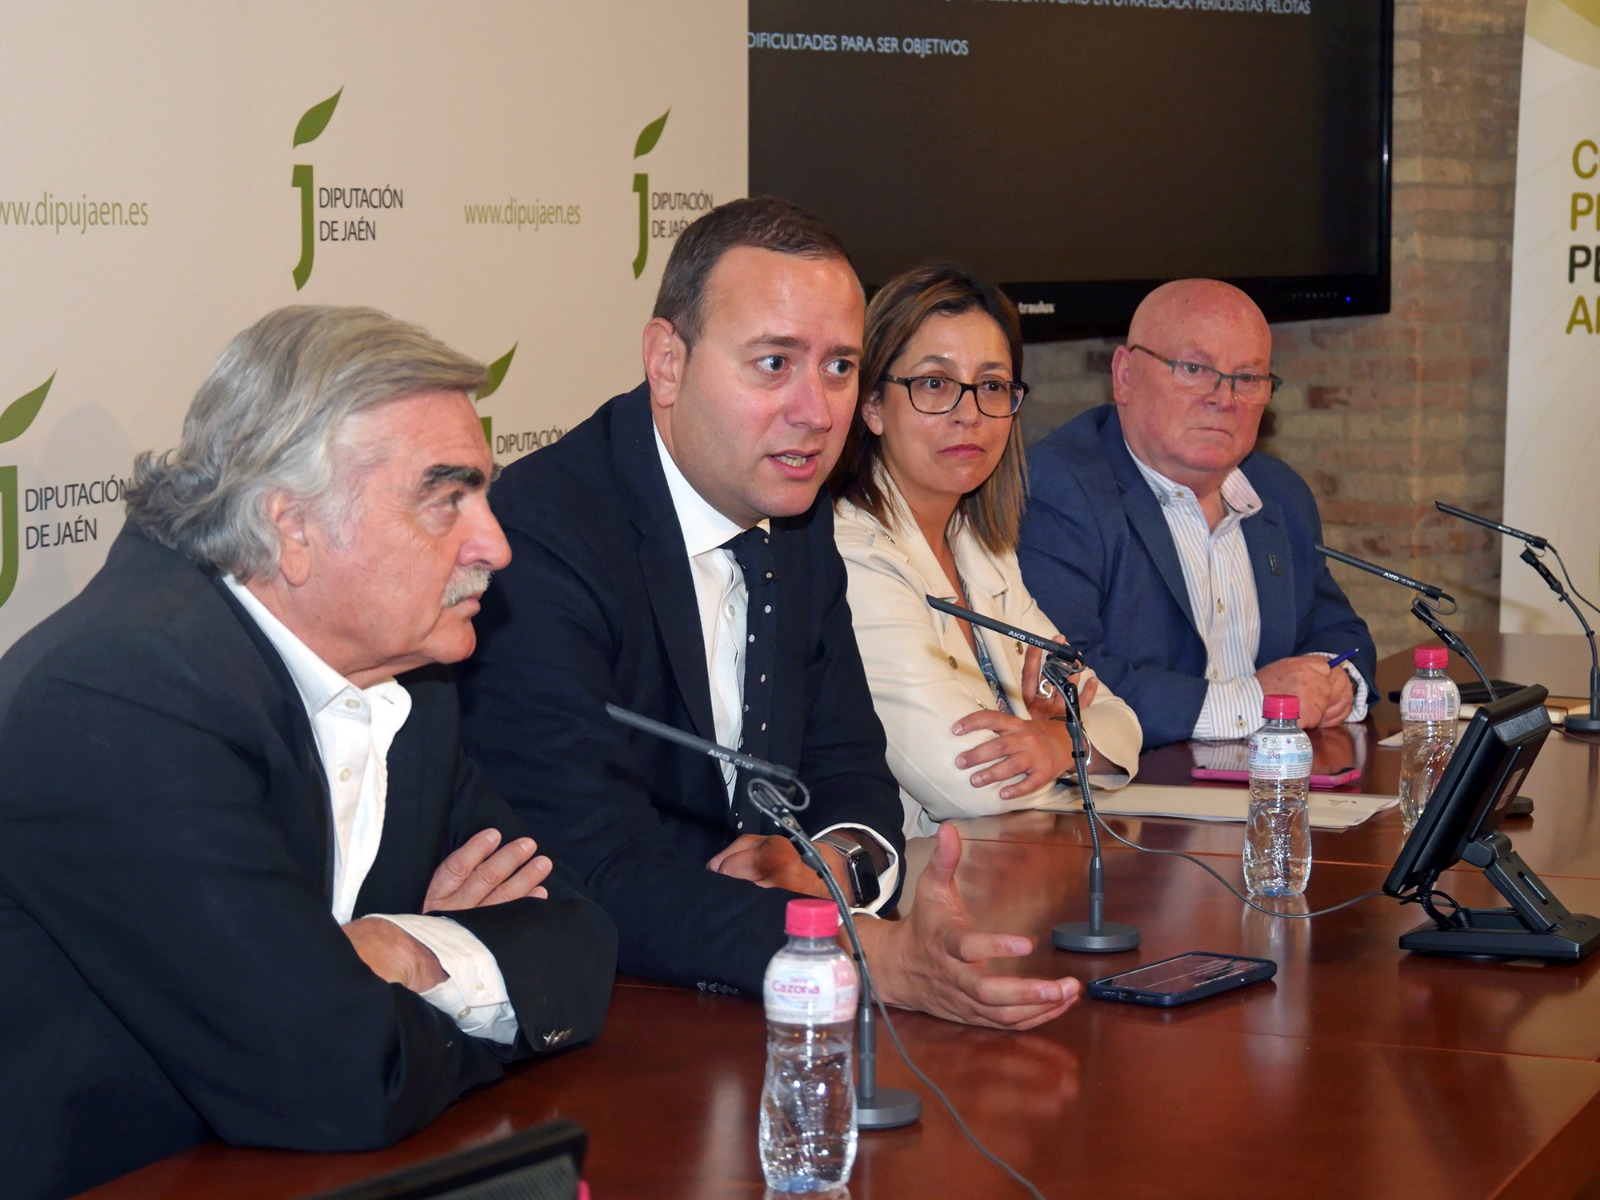 Conferencia de Jorge gallardo en la que el periodista Antonio Oliver (izq.) ha sido el encargado de presentar al periodista.